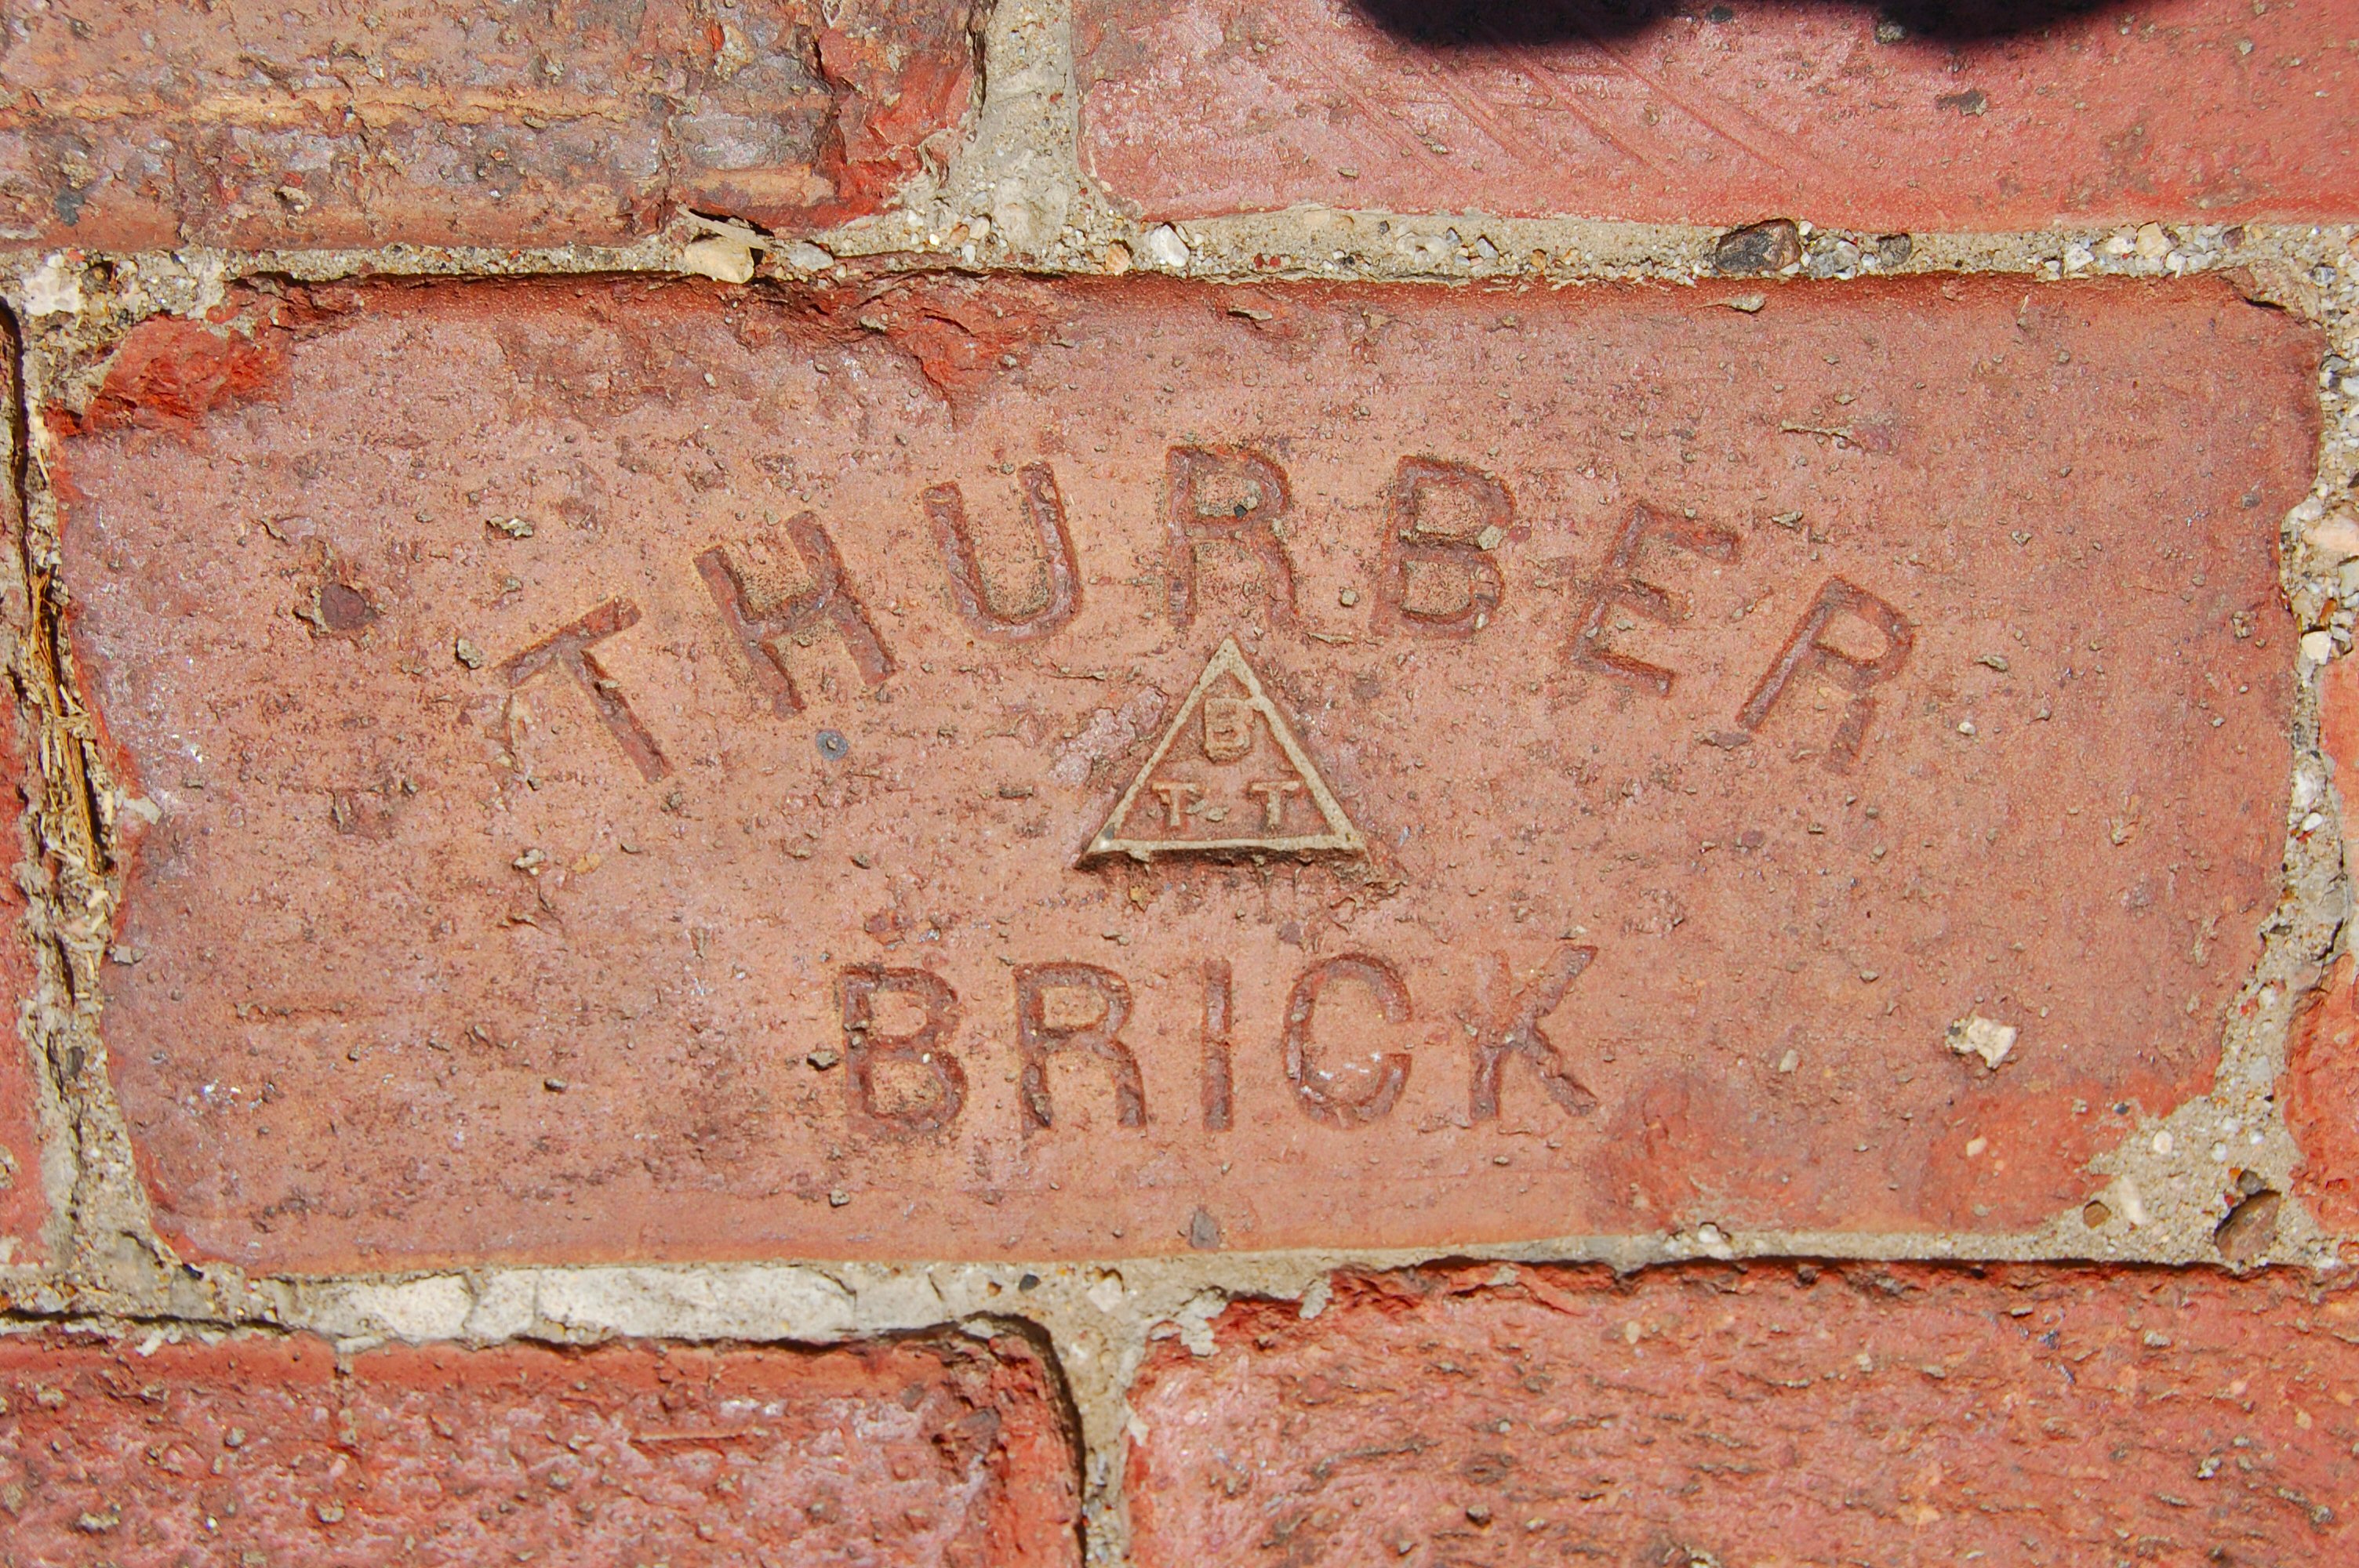 Acme Brick - Wikipedia